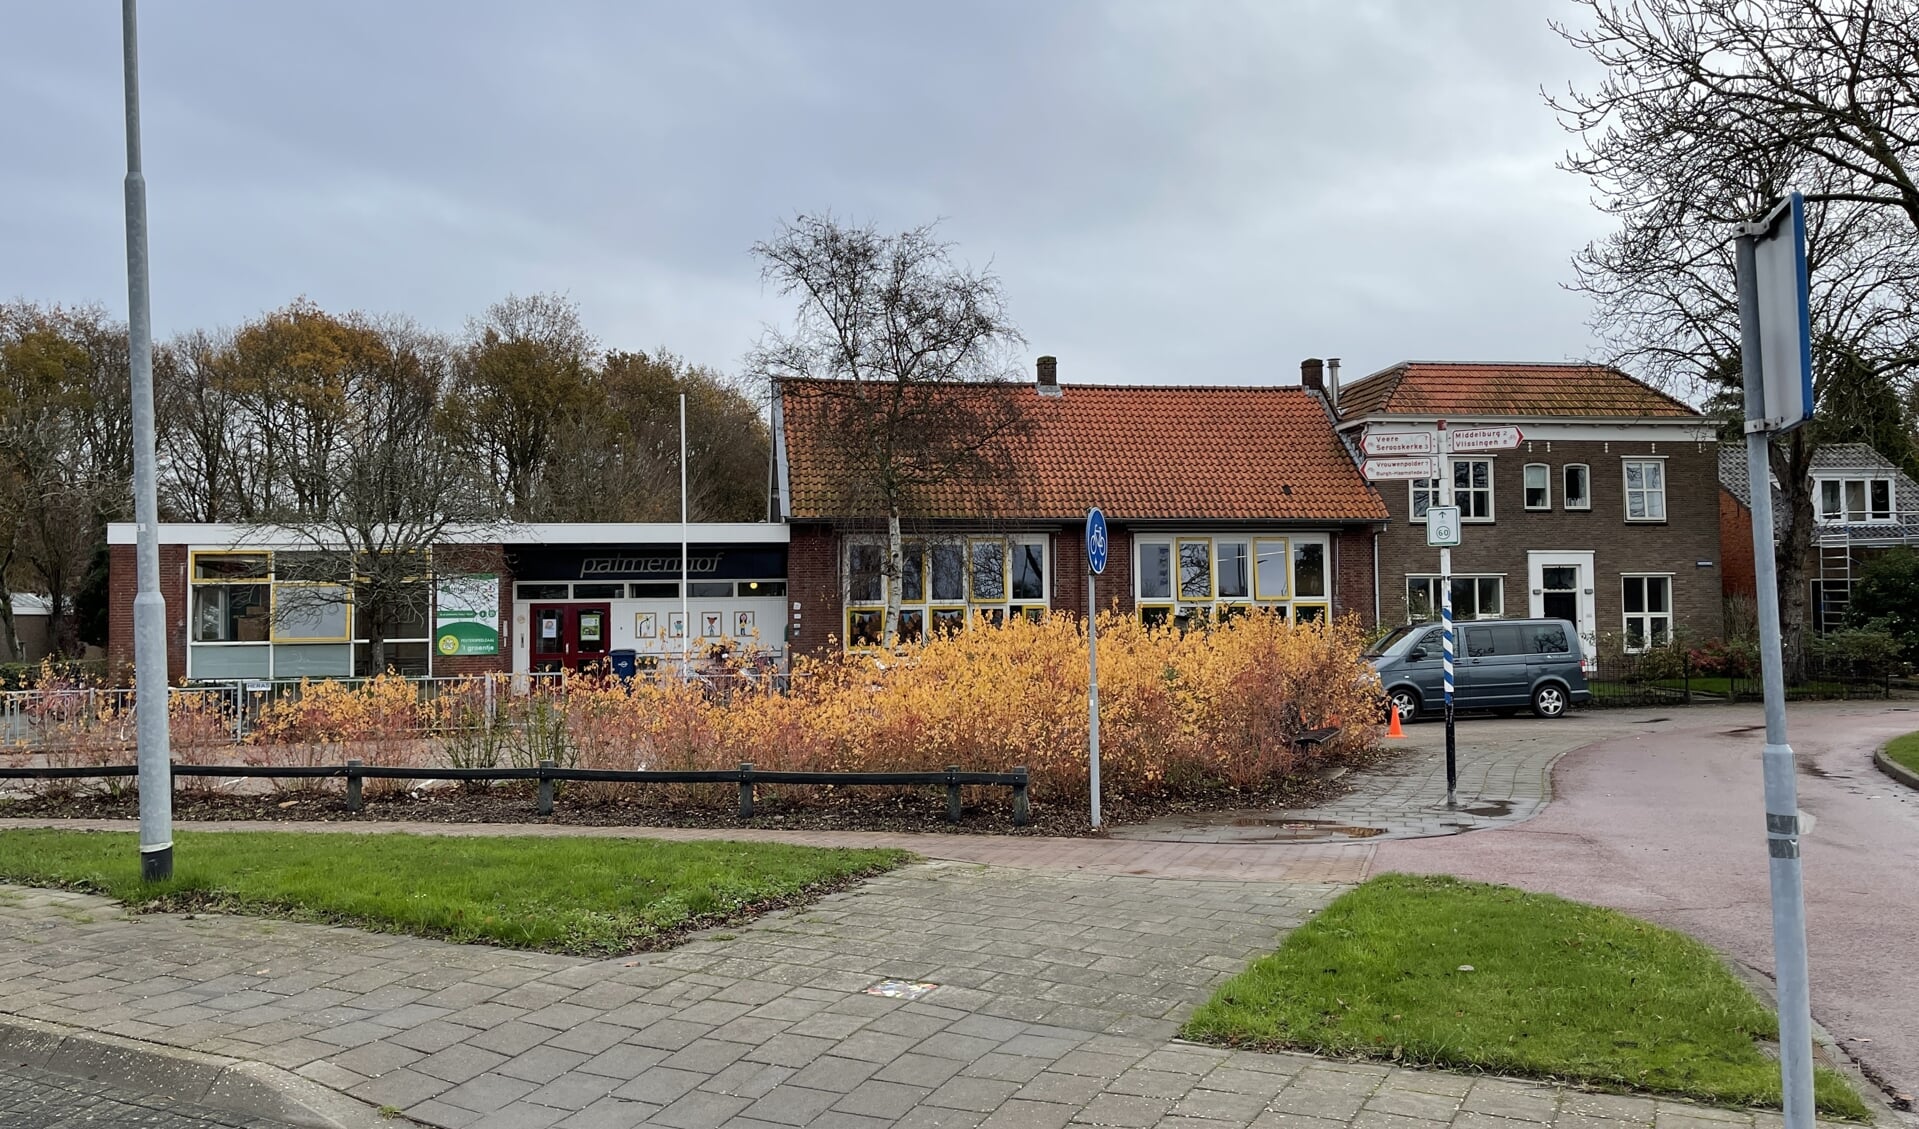 Expliciet blijven Turbine Sint Laurens volledig over op LED verlichting - Al het nieuws uit Middelburg